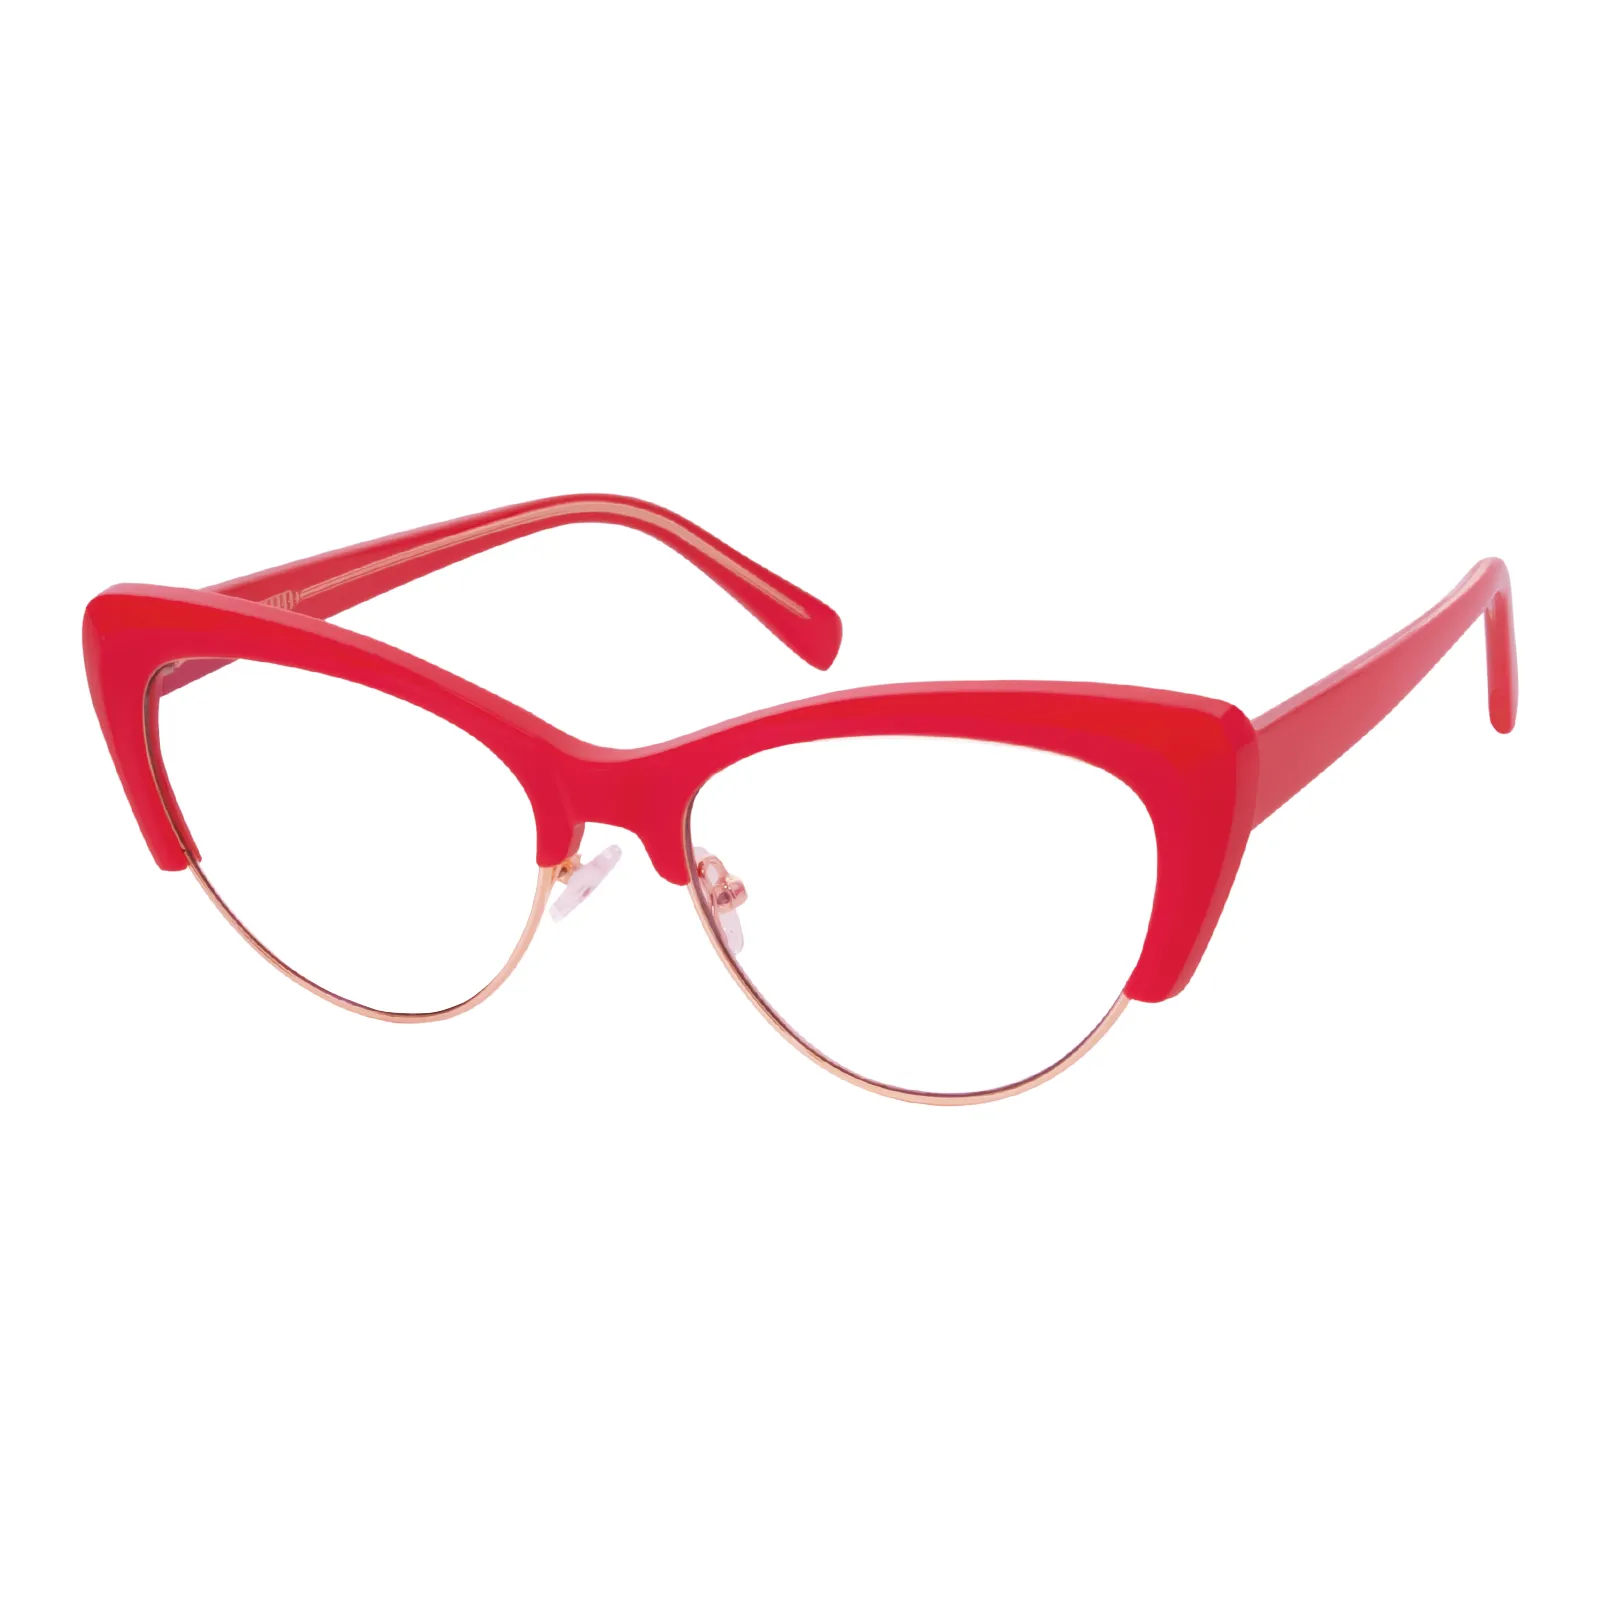 Christine - Cat-eye Red Glasses for Women